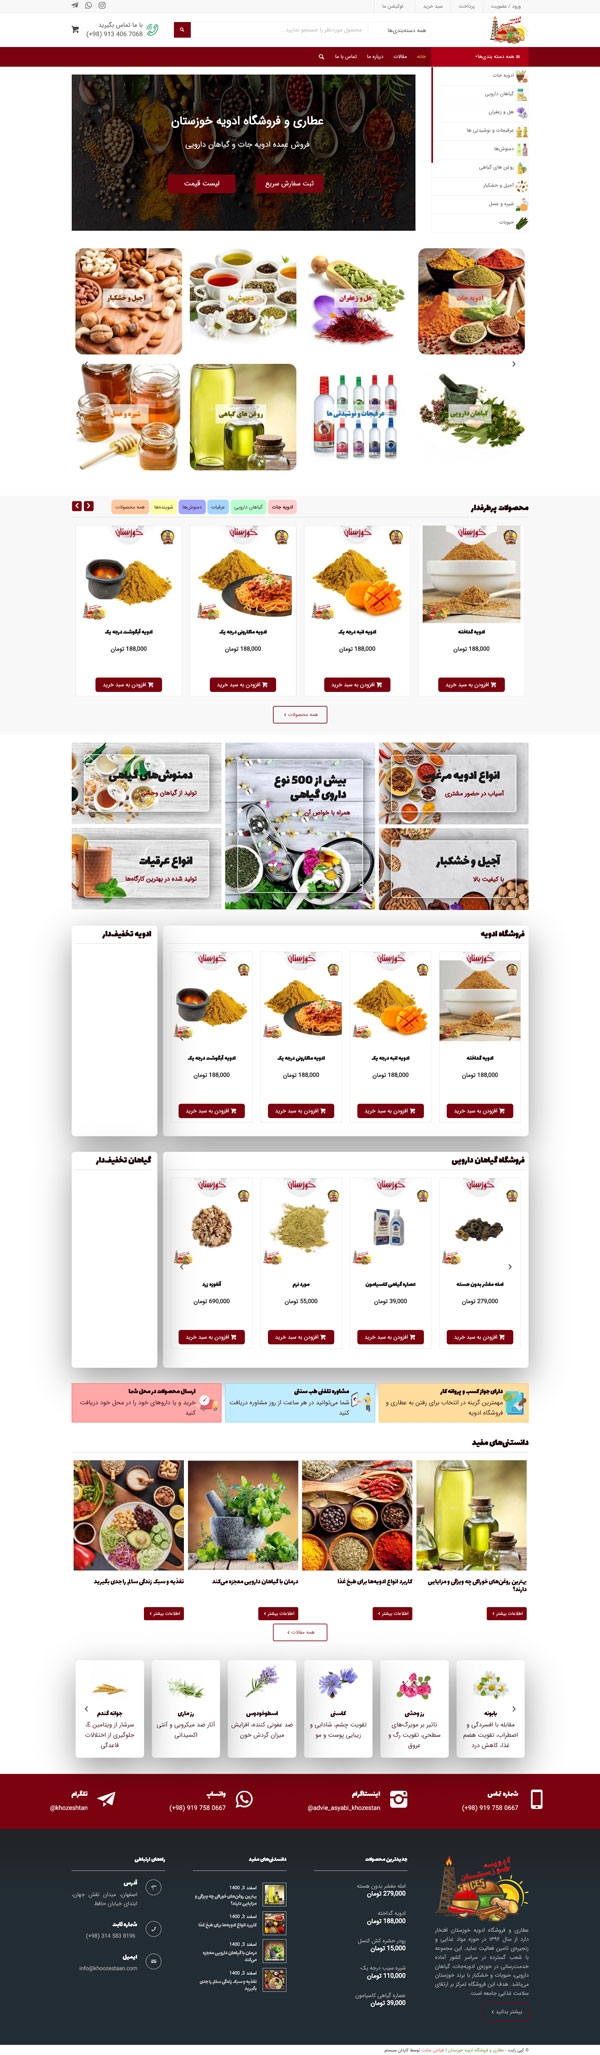 طراحی سایت خوزستان | فروشگاه ادویه و عطاری